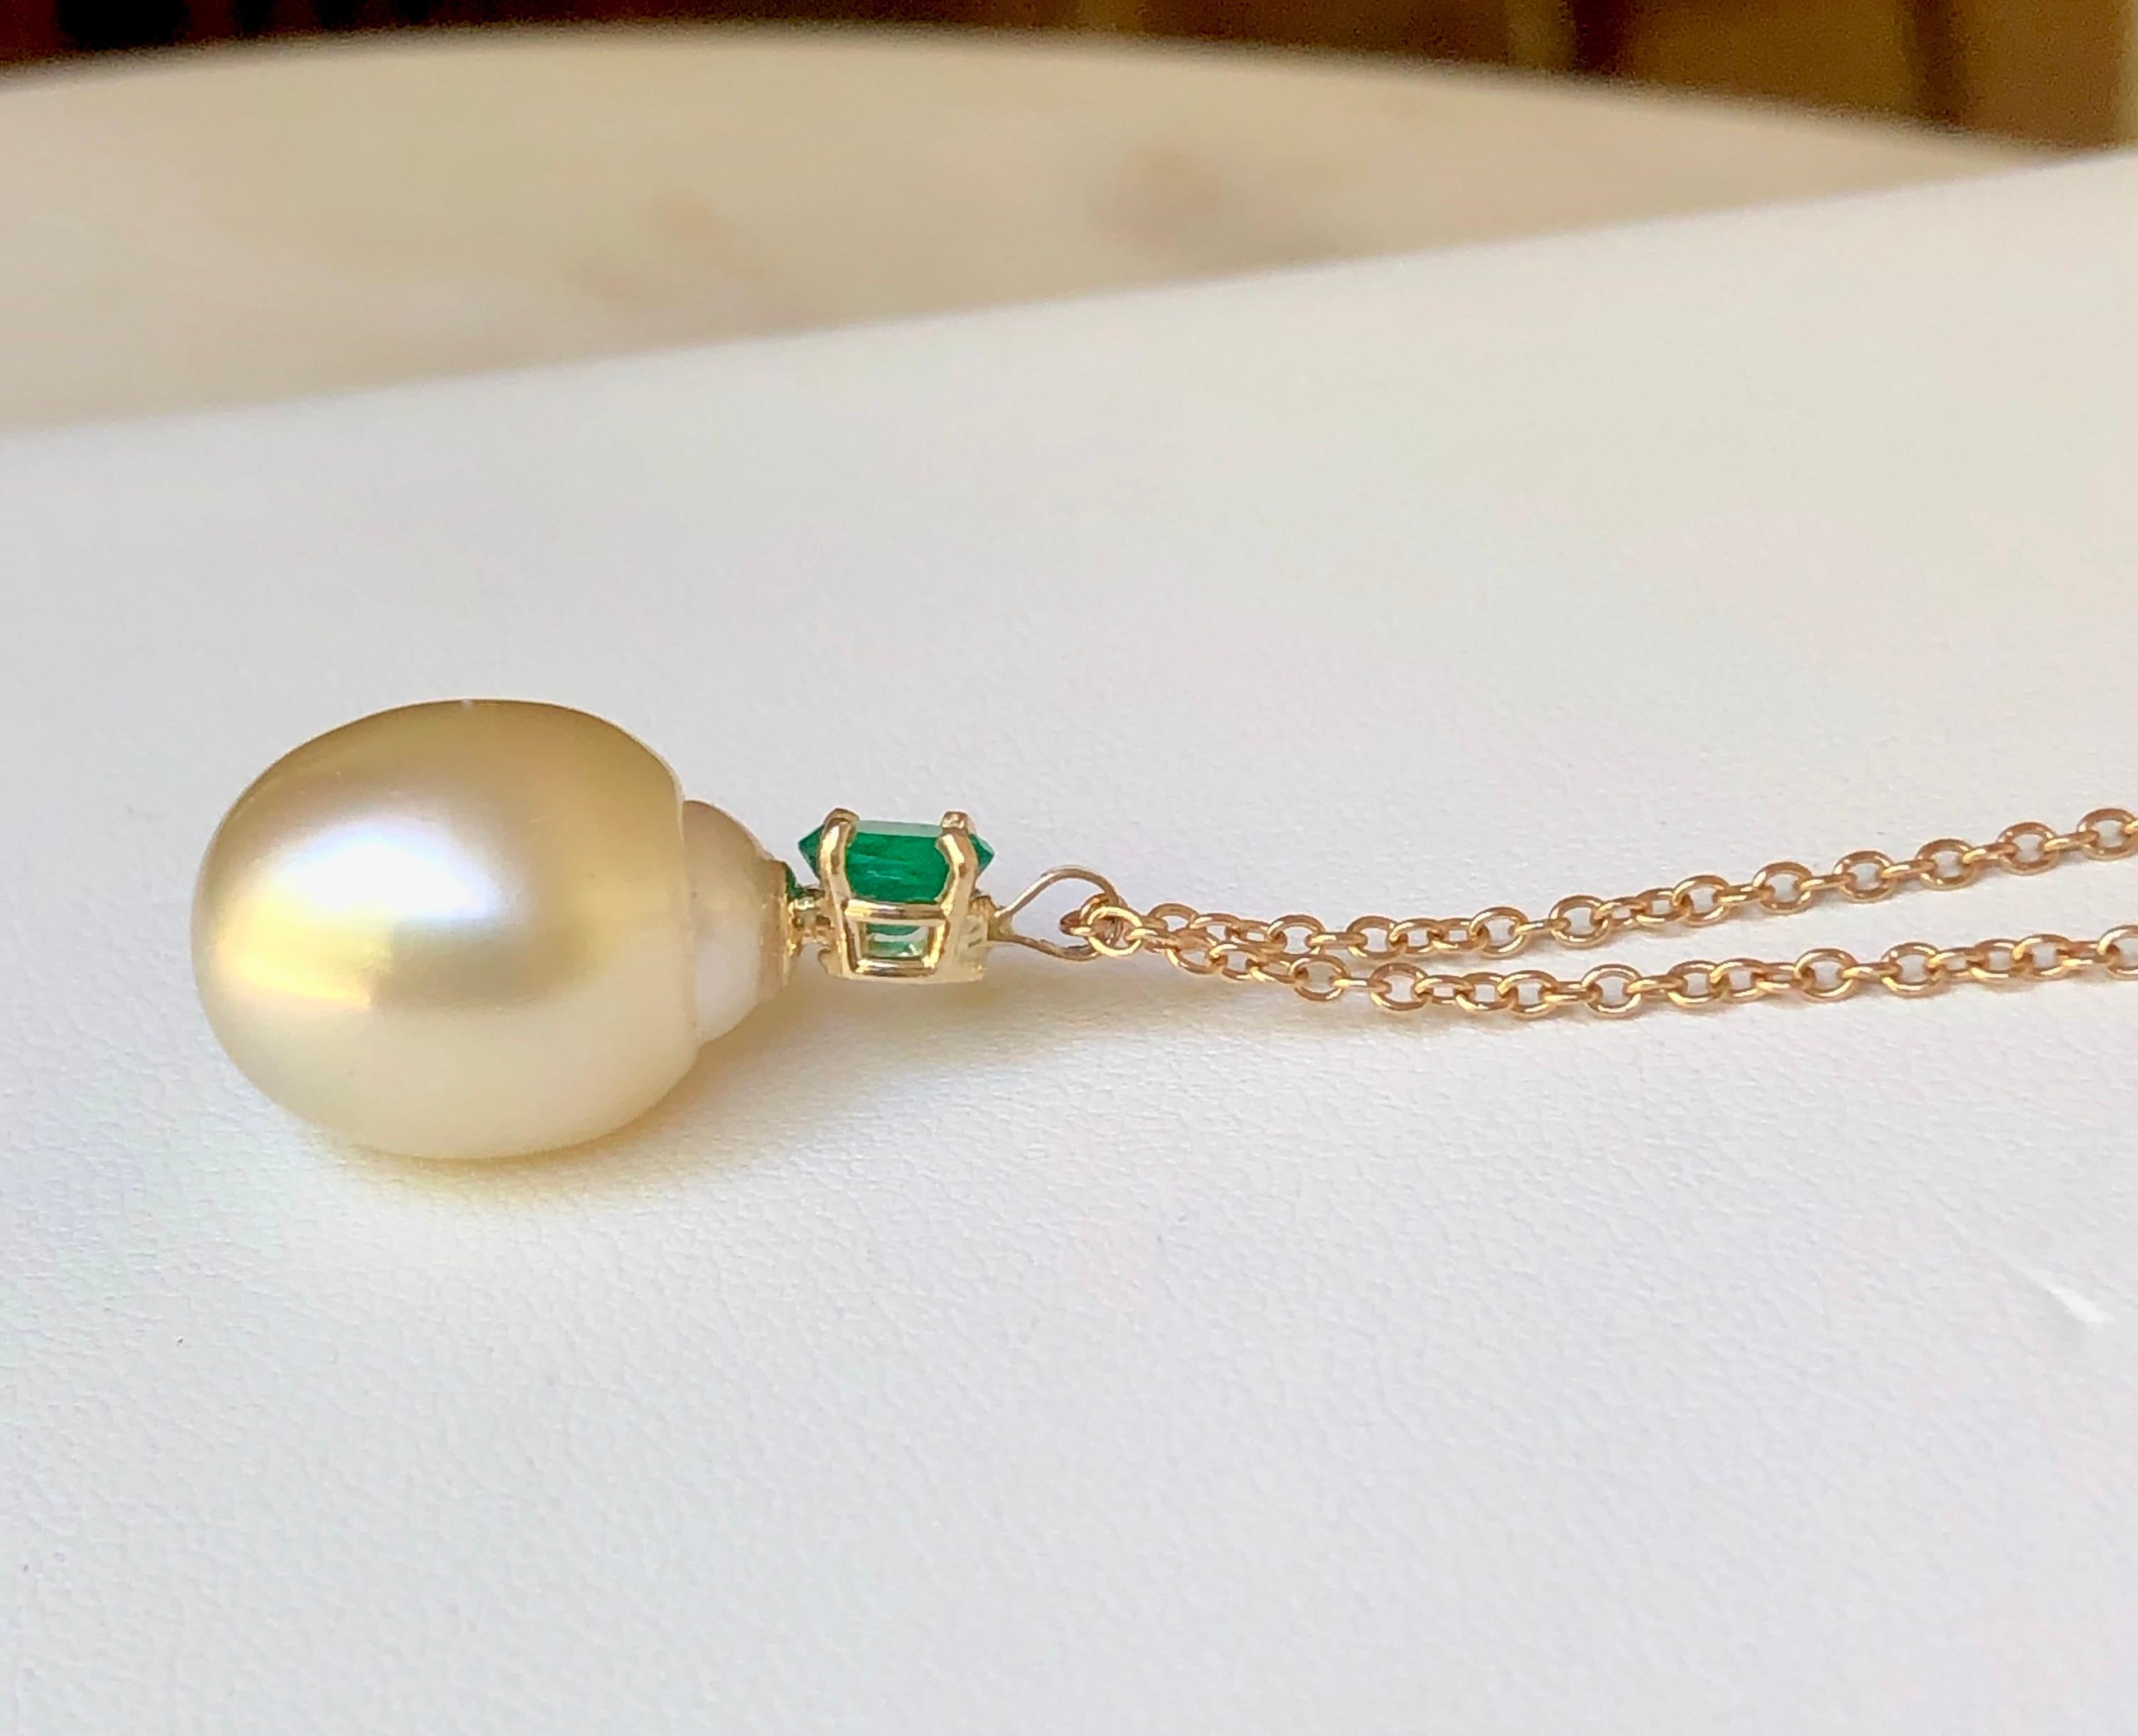 Emerald South Sea Pearl Pendant Necklace 18 Karat 4